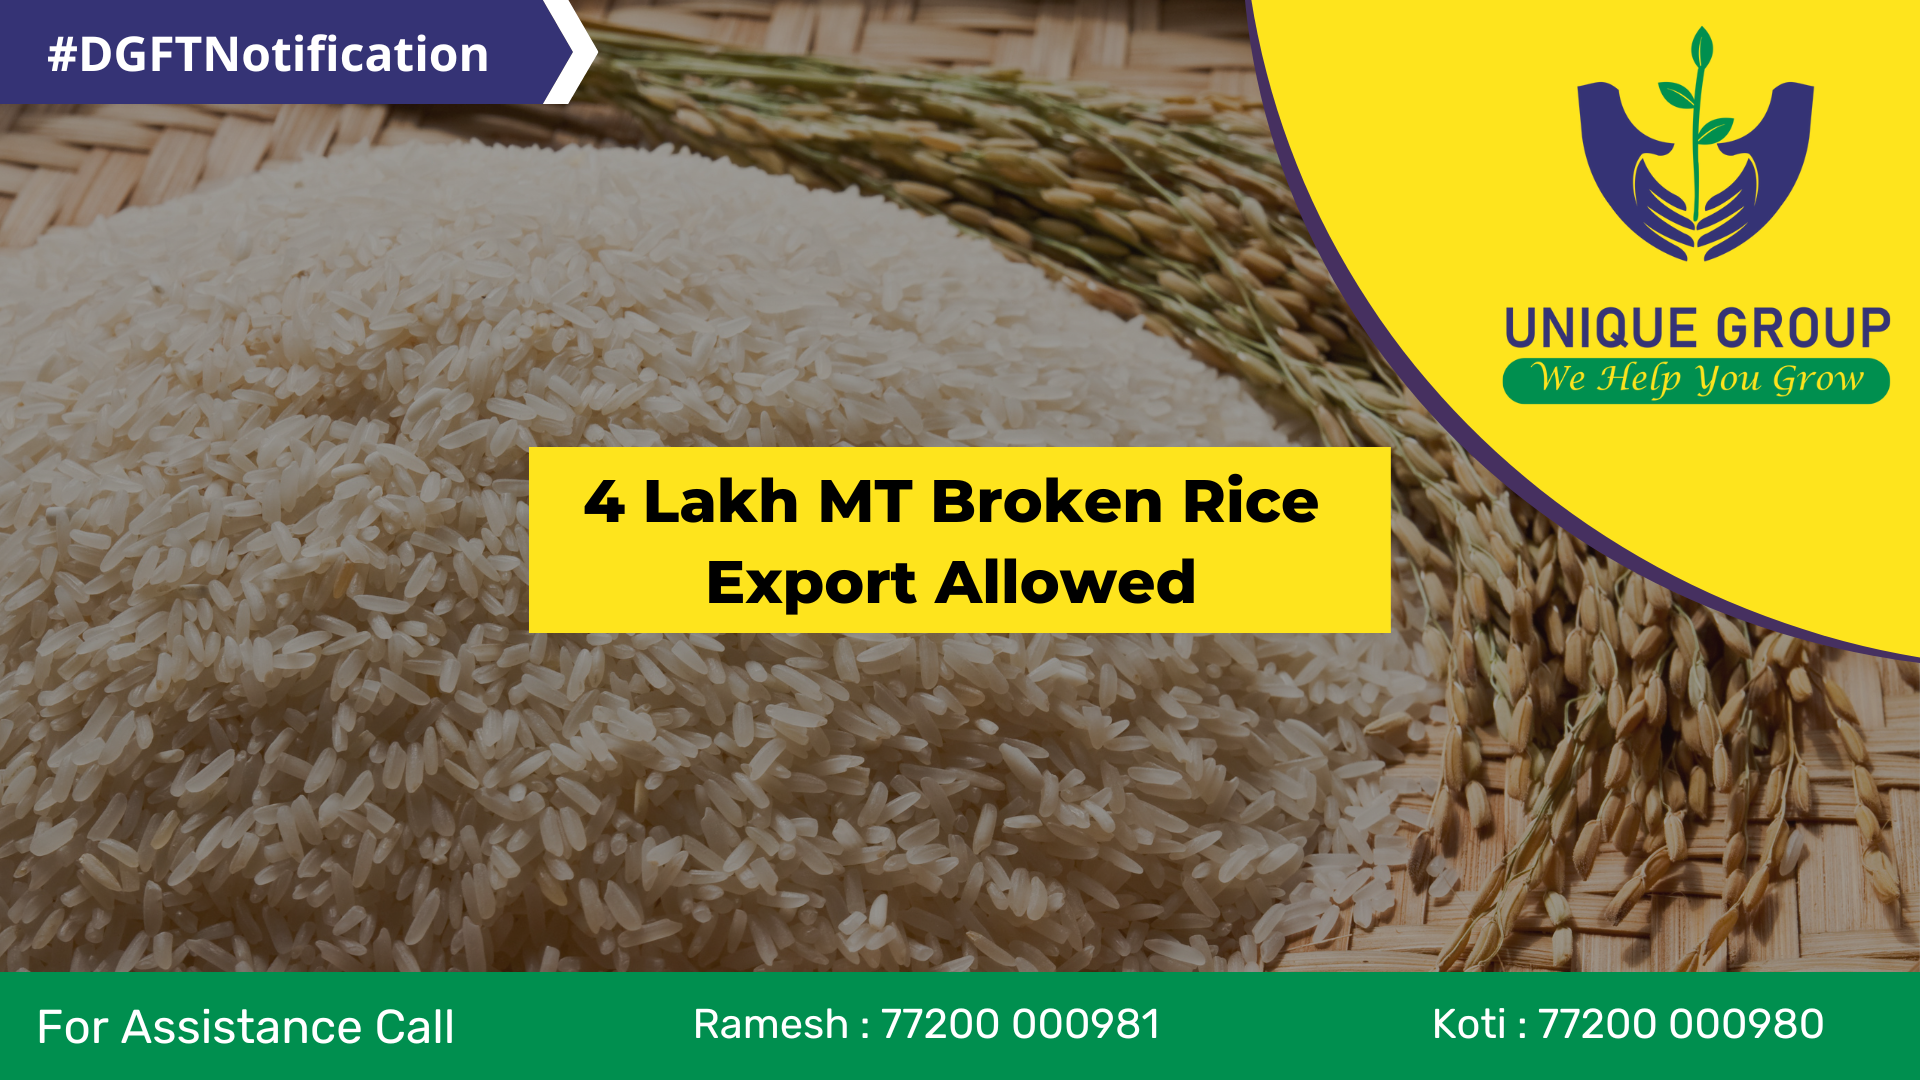 Export of Broken Rice